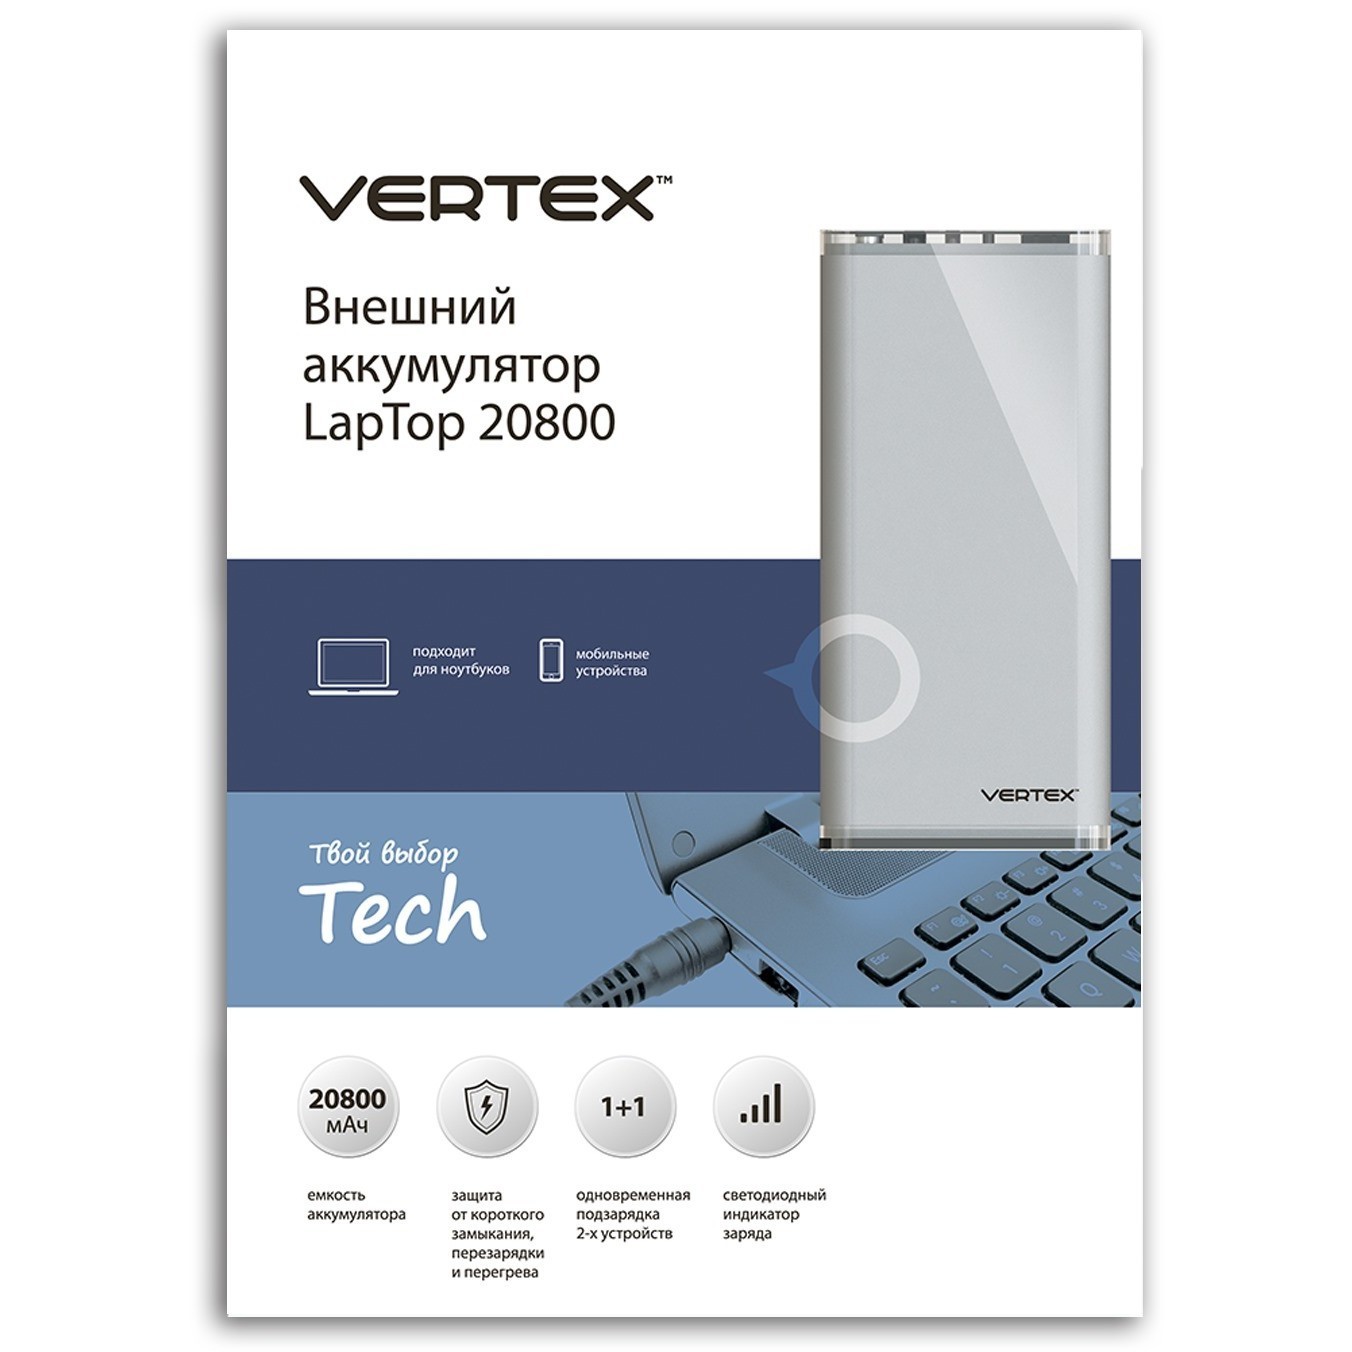 Производитель вертекс отзывы. Vertex Laptop 20800. Vertex Power Bank.